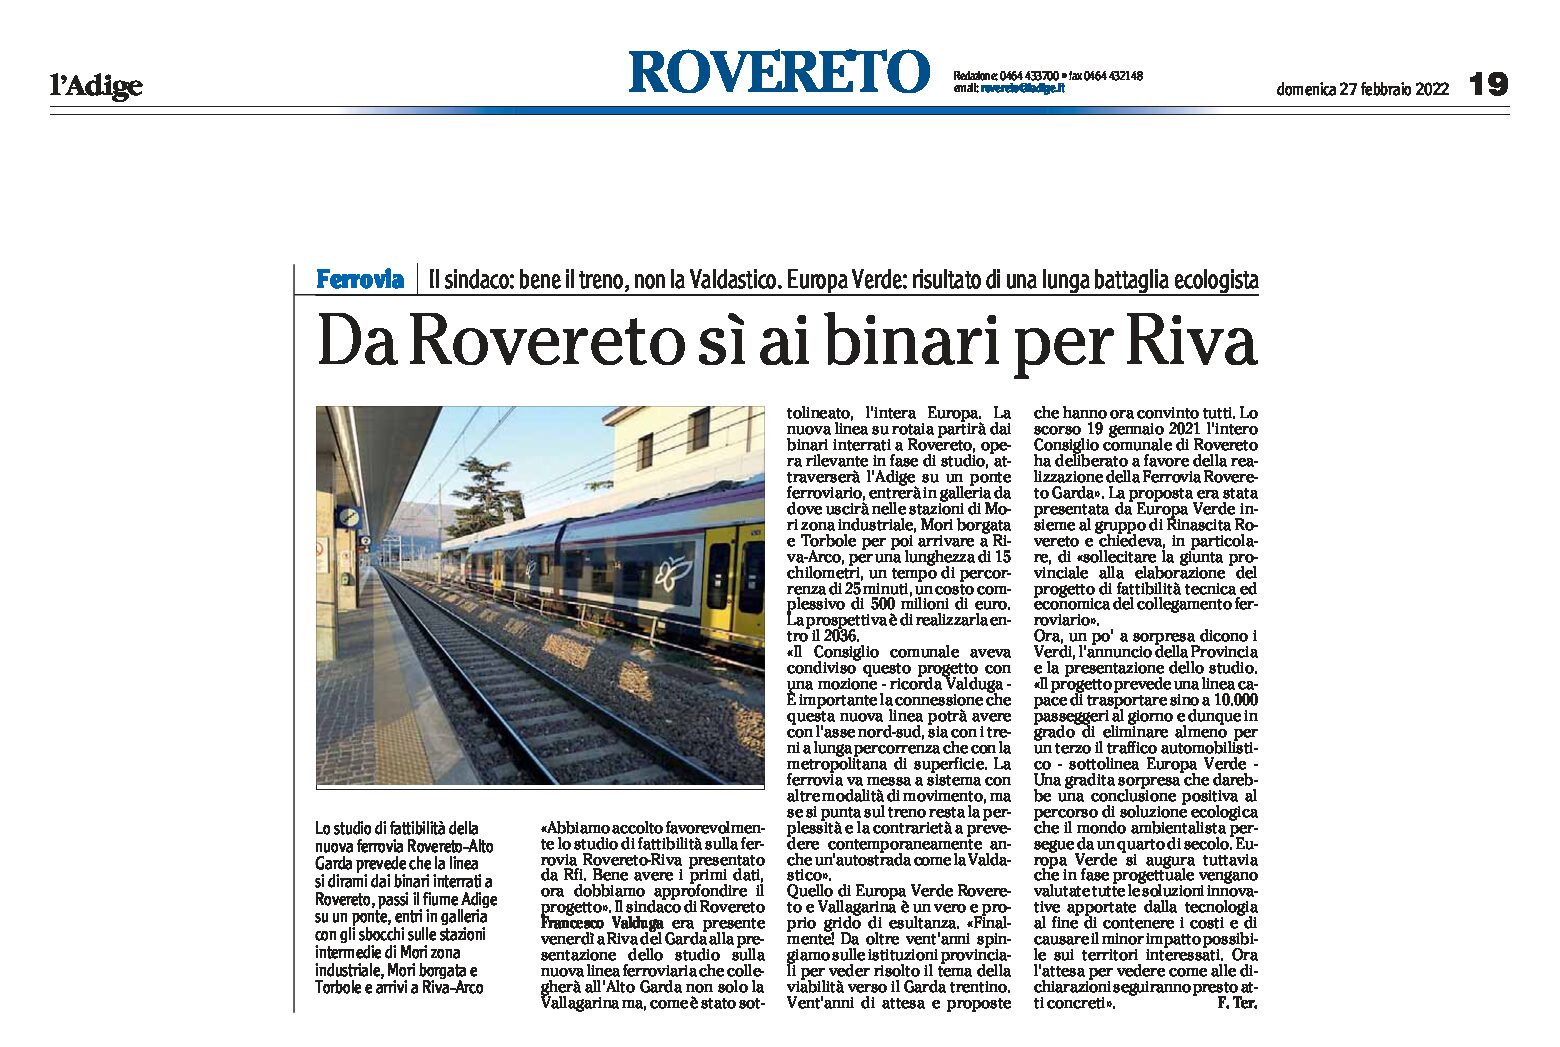 Ferrovia: da Rovereto sì ai binari per Riva